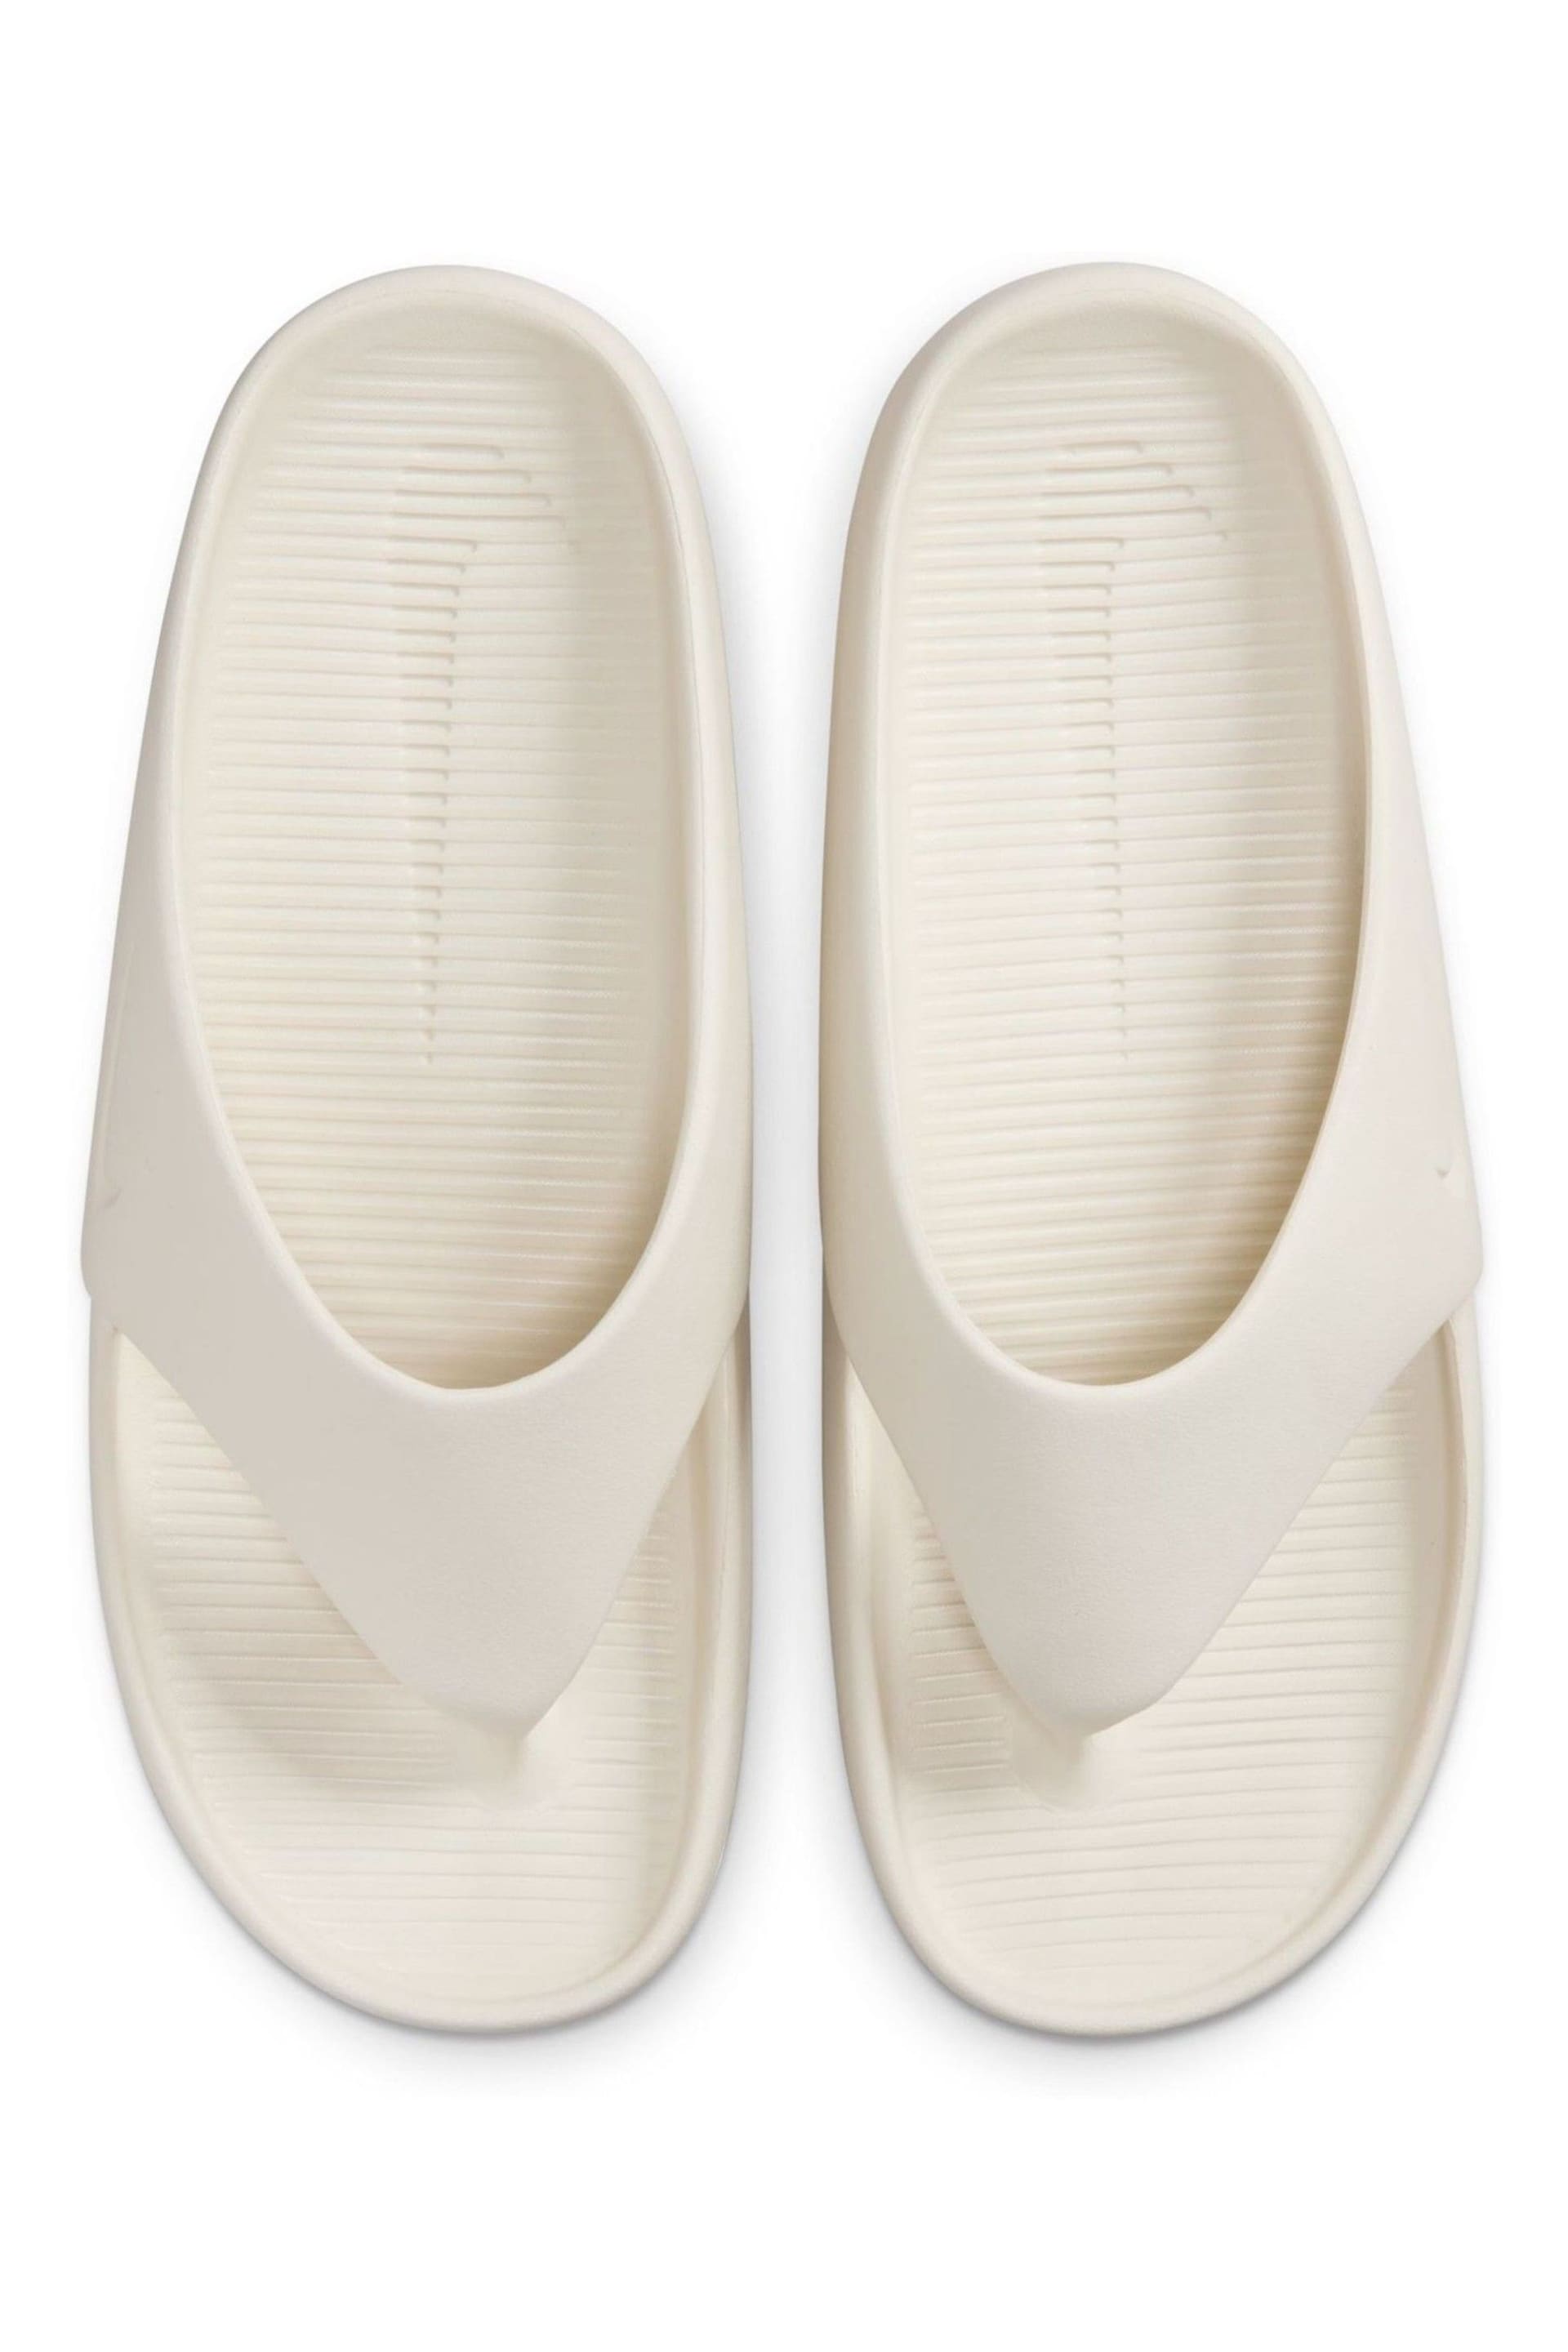 Nike White Calm Flip Flops - Image 7 of 10